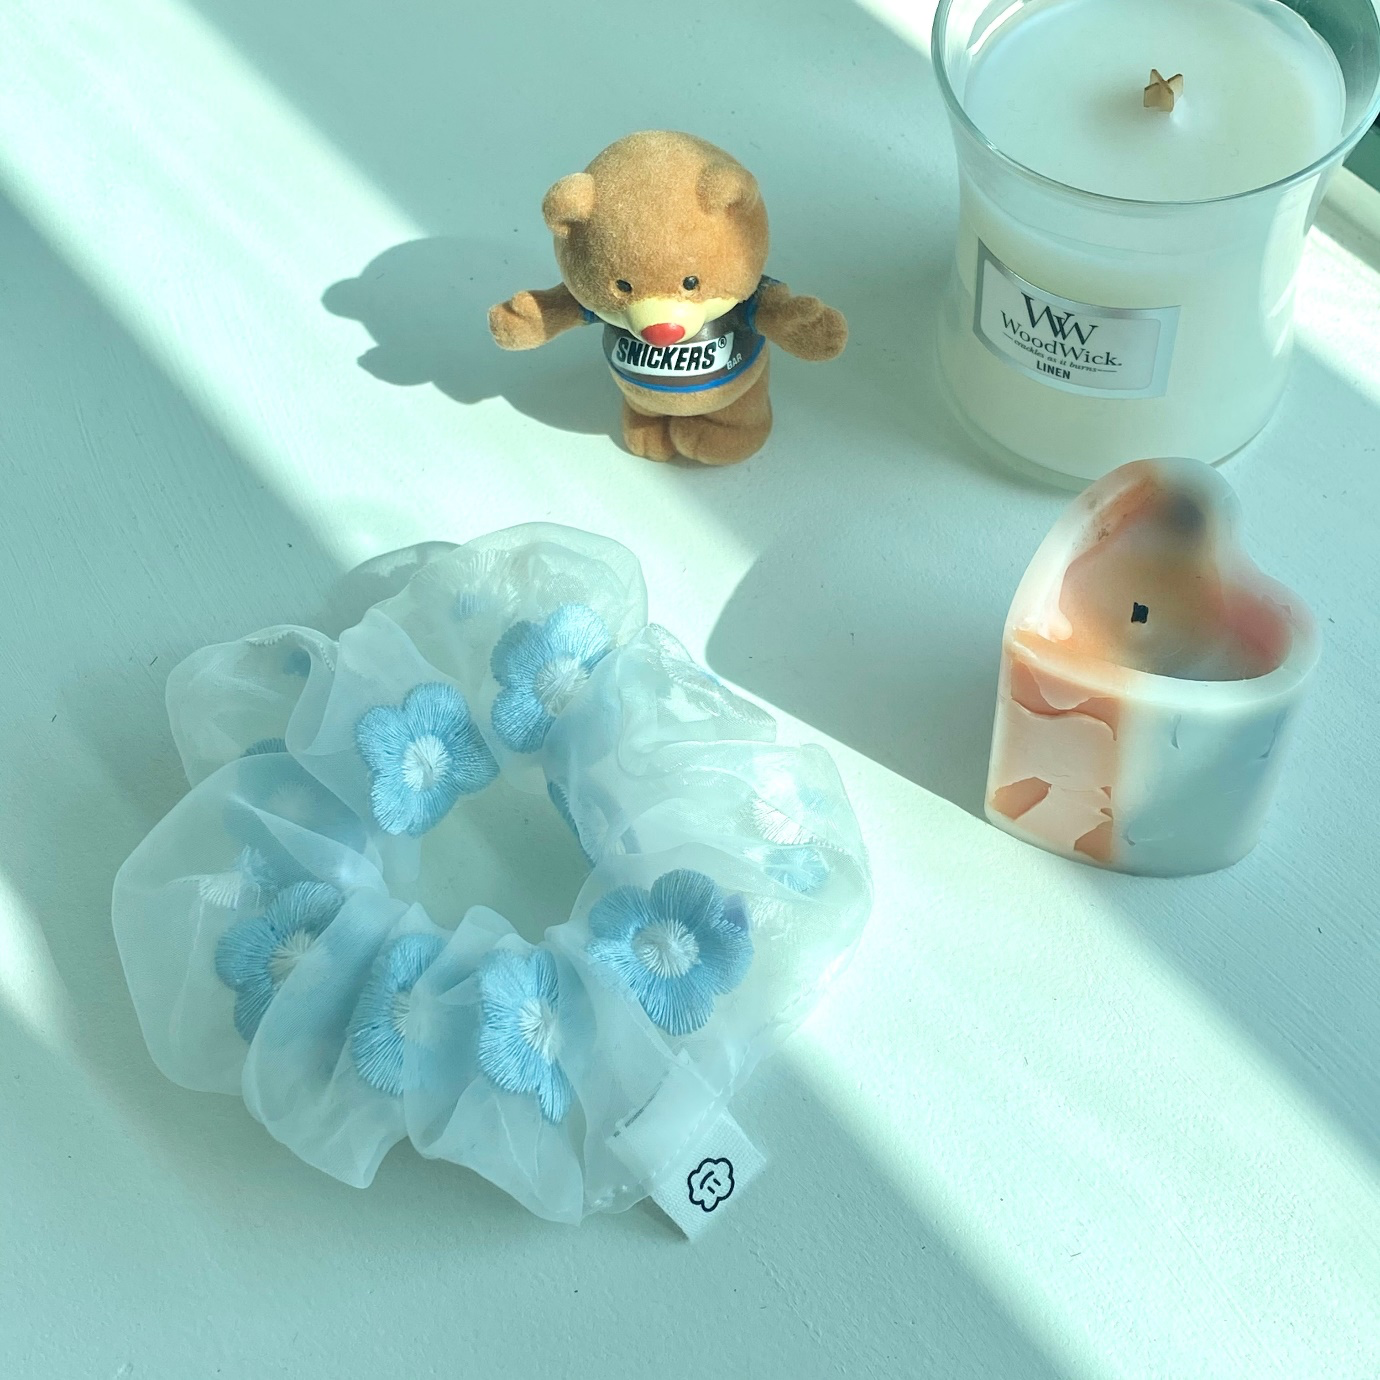 장난감, 실내, 플라스틱, 컵이(가) 표시된 사진

자동 생성된 설명